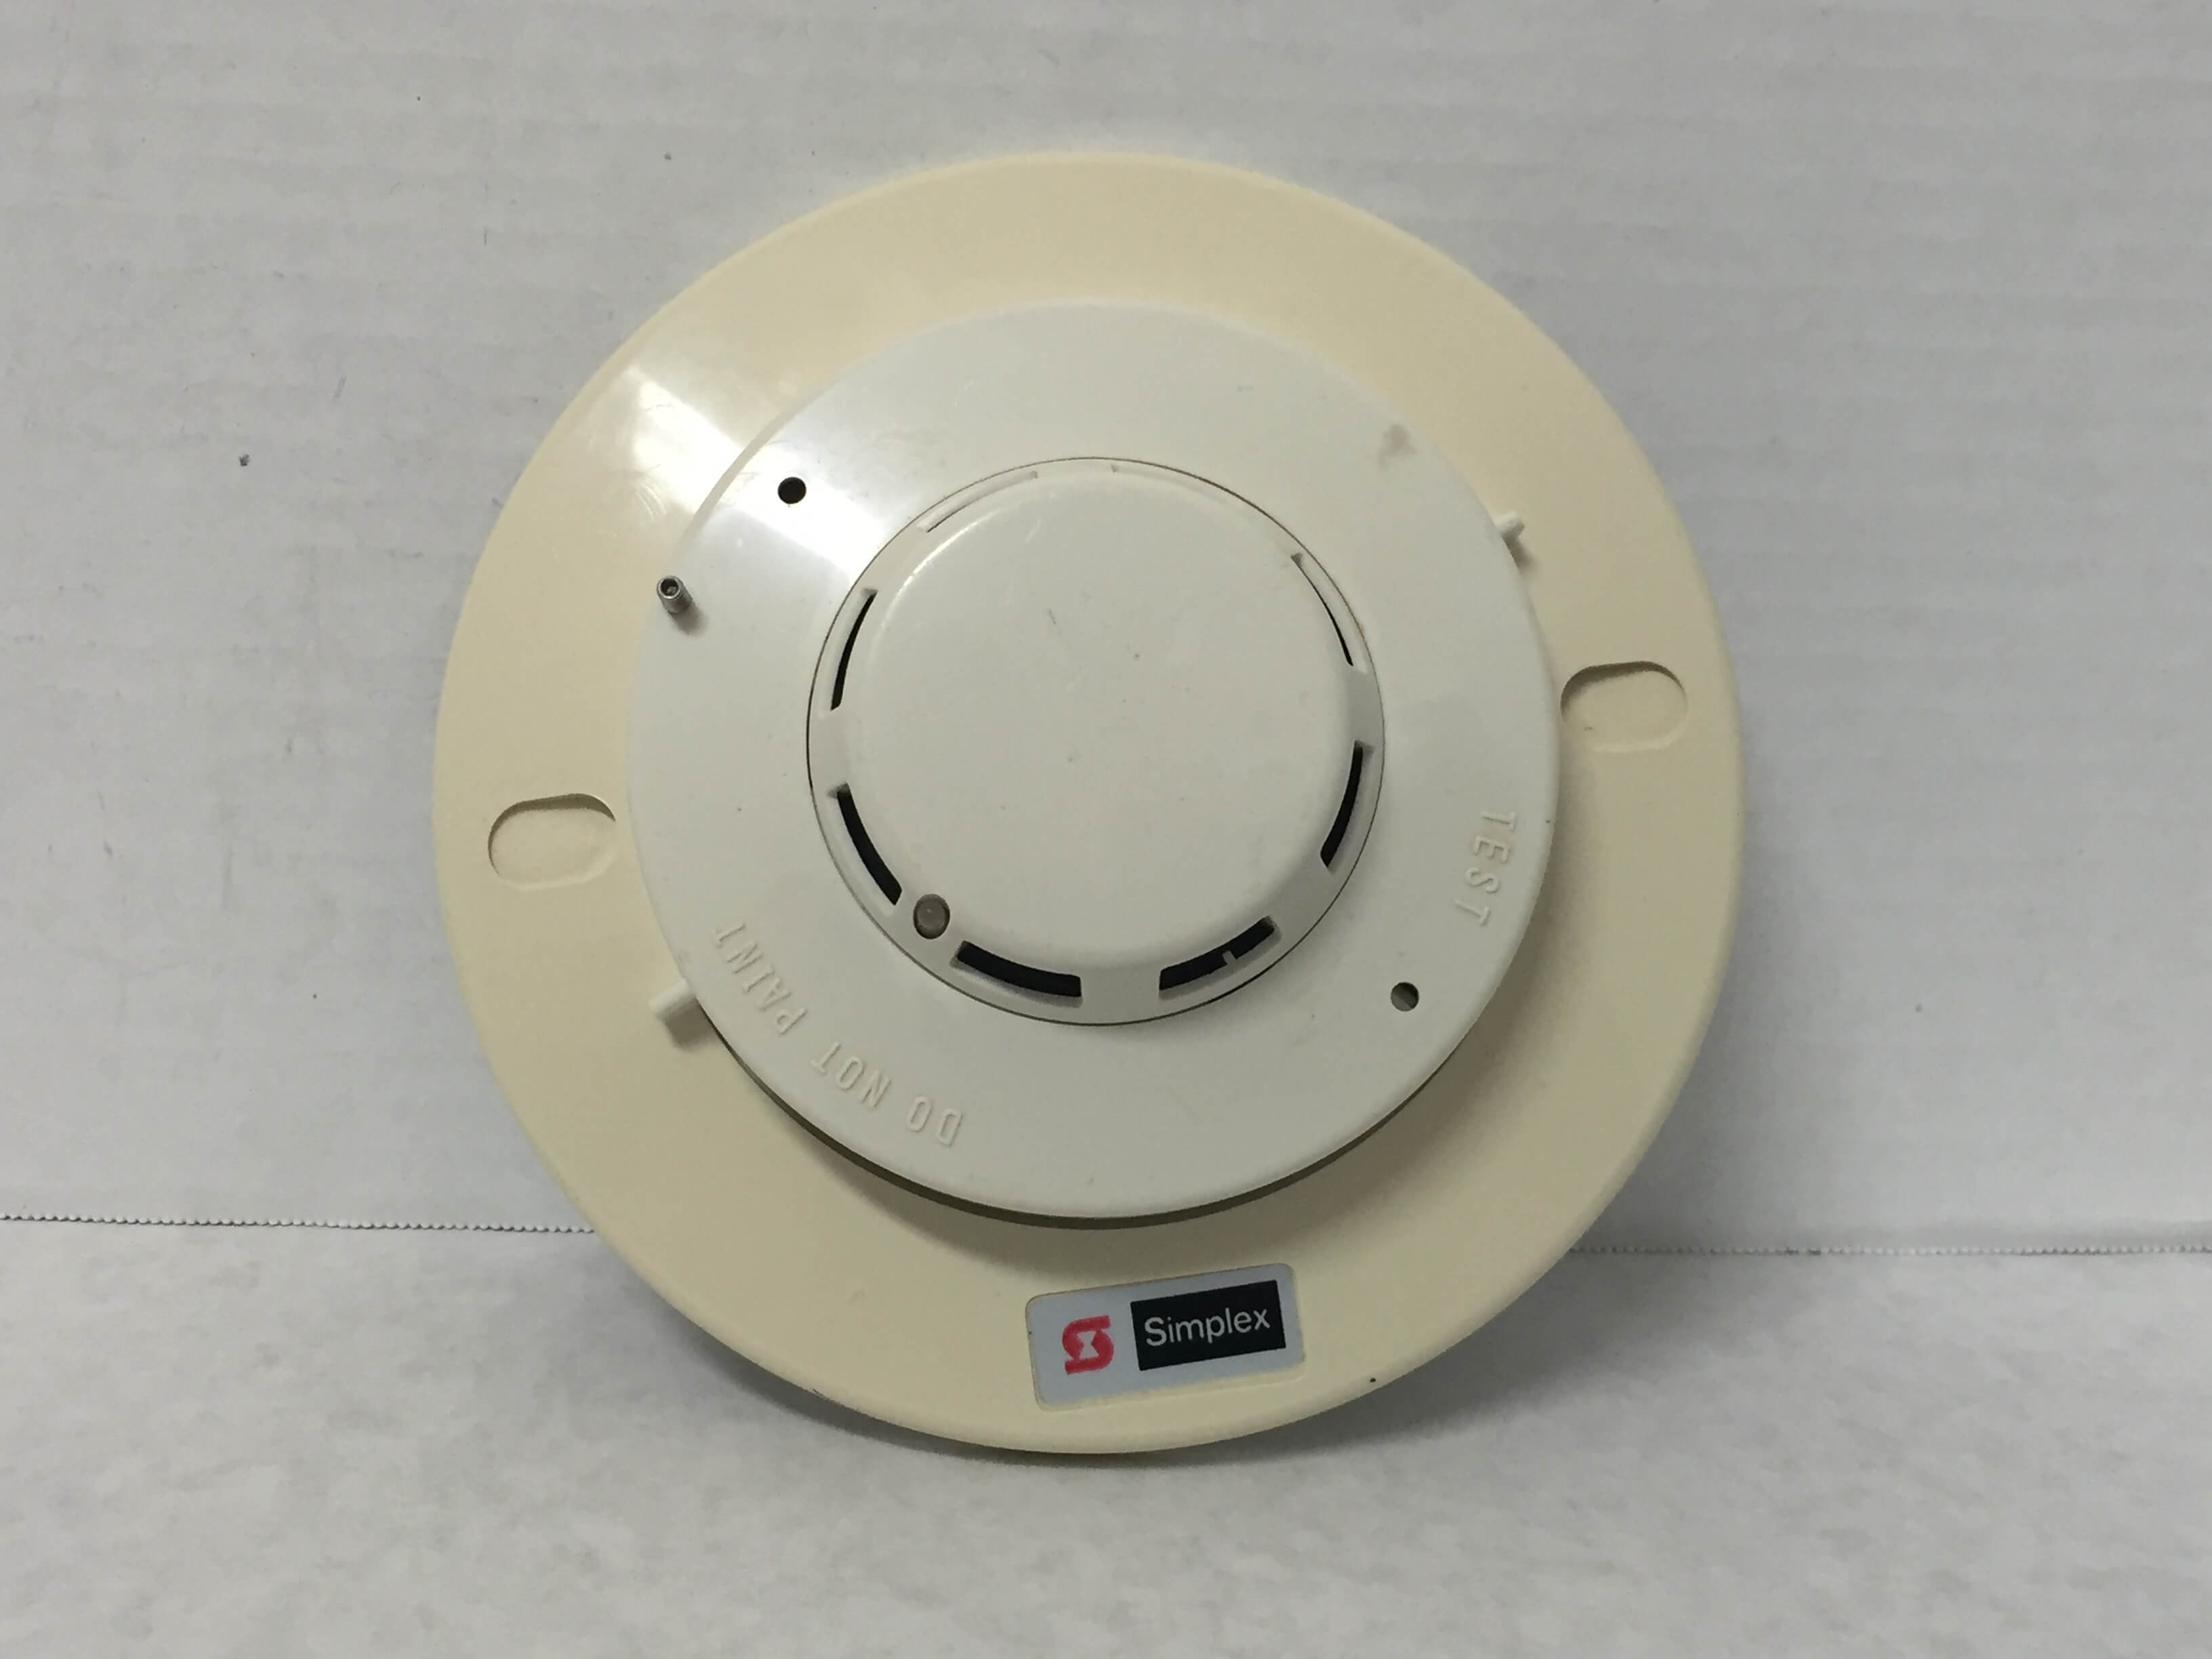 Simplex 2908-9201 - FireAlarms.tv - jjinc24/U8oL0's Fire Alarm ...